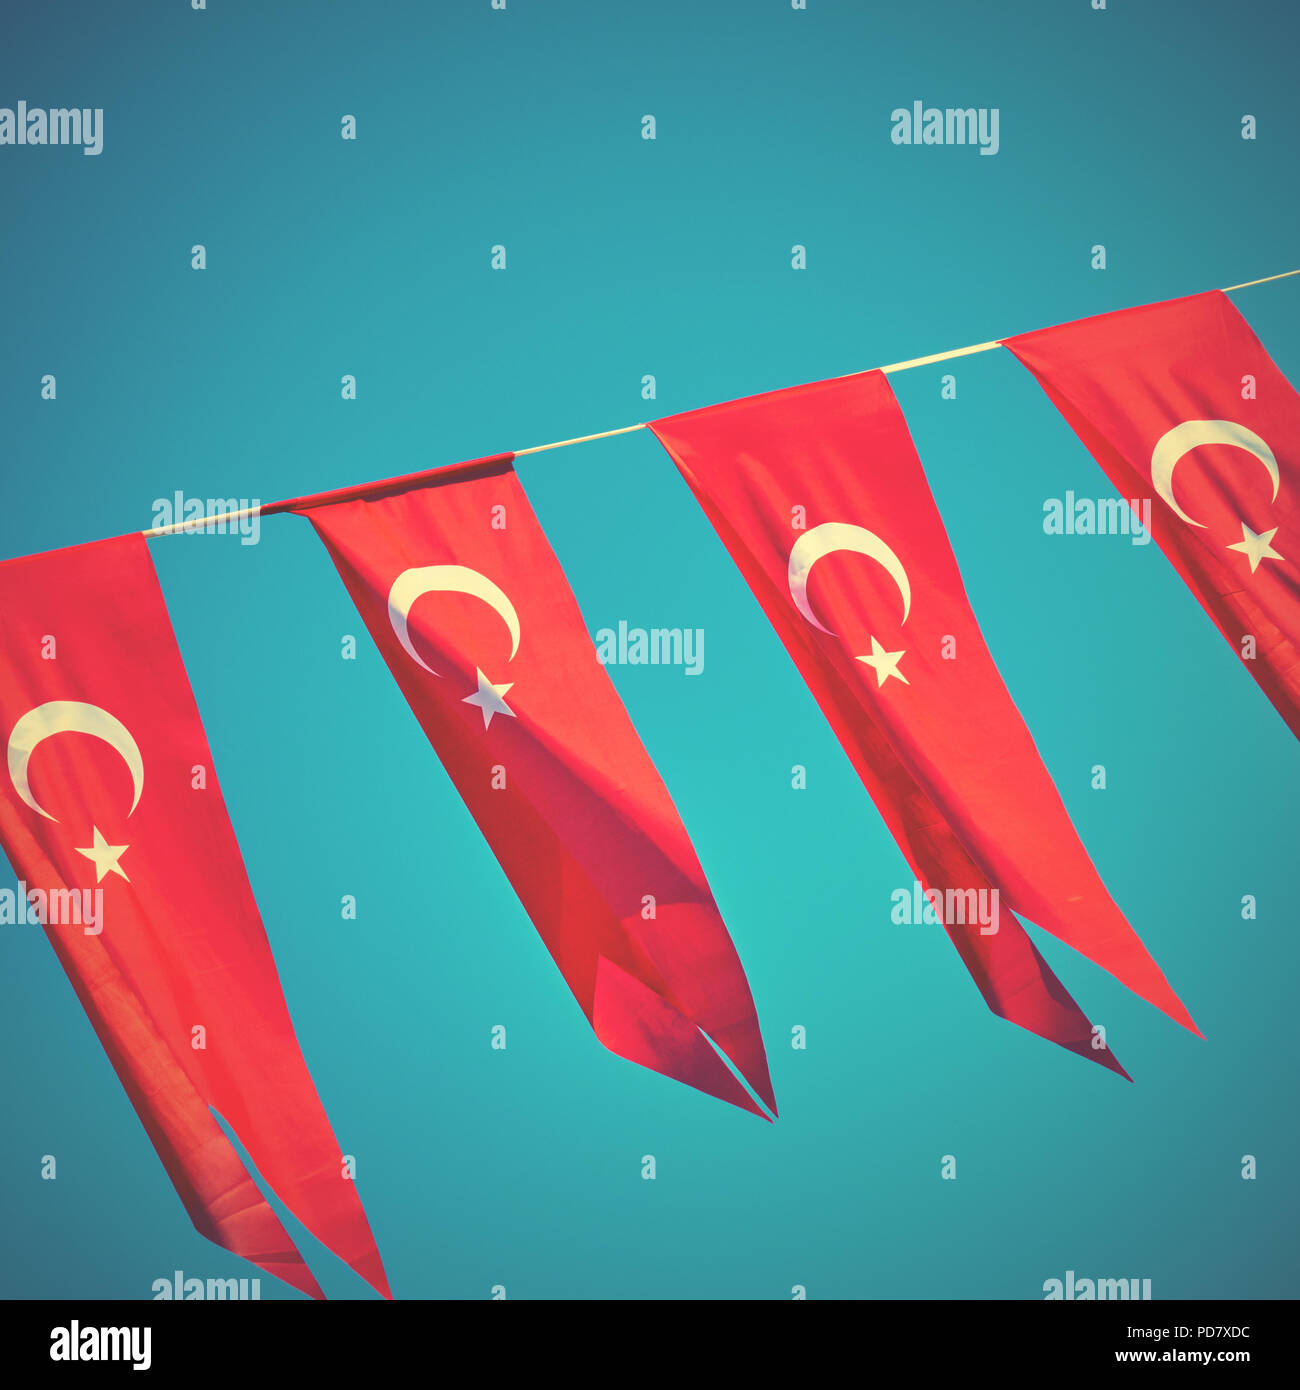 Petits drapeaux de la Turquie - Vacances petits drapeaux turcs. Image style rétro Banque D'Images